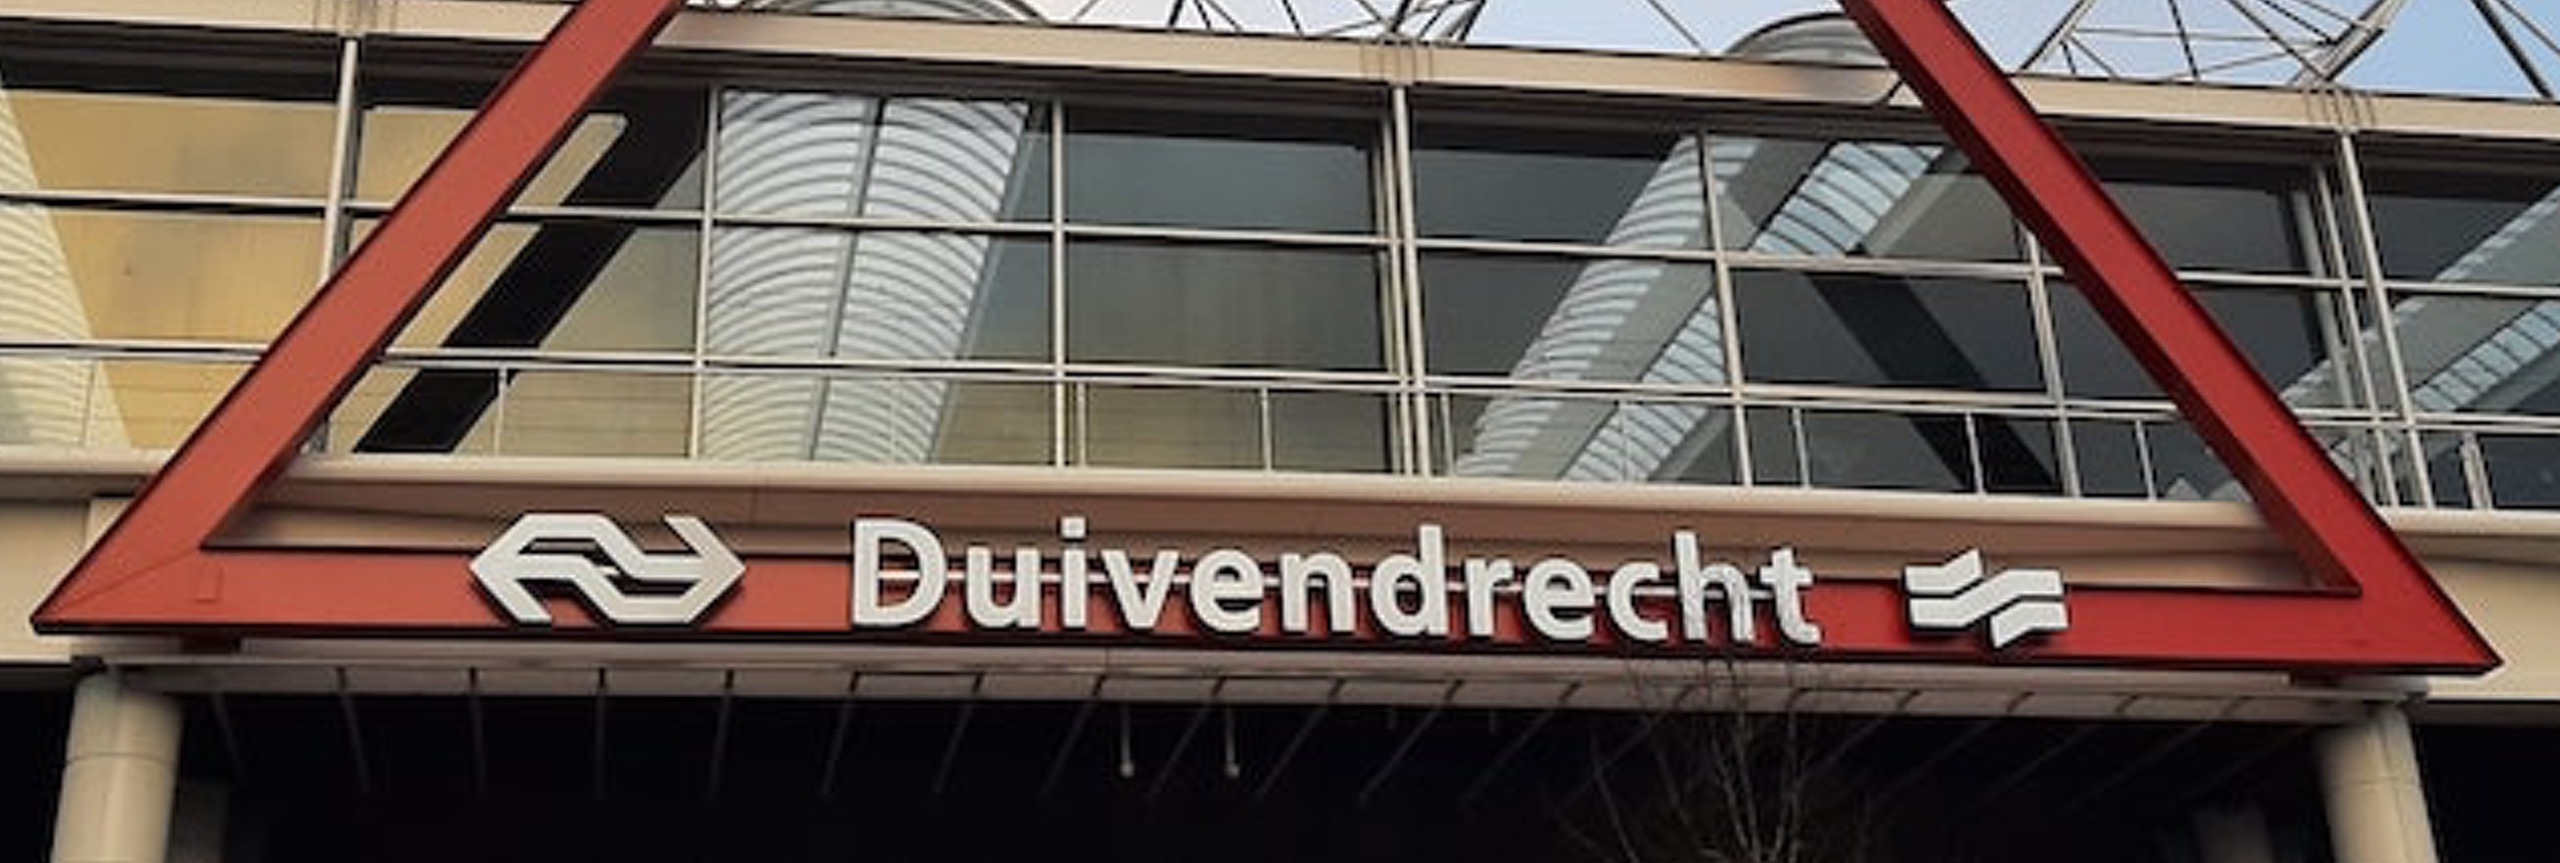 Station Duivendrecht met het NS logo, ramen en een rode driehoek